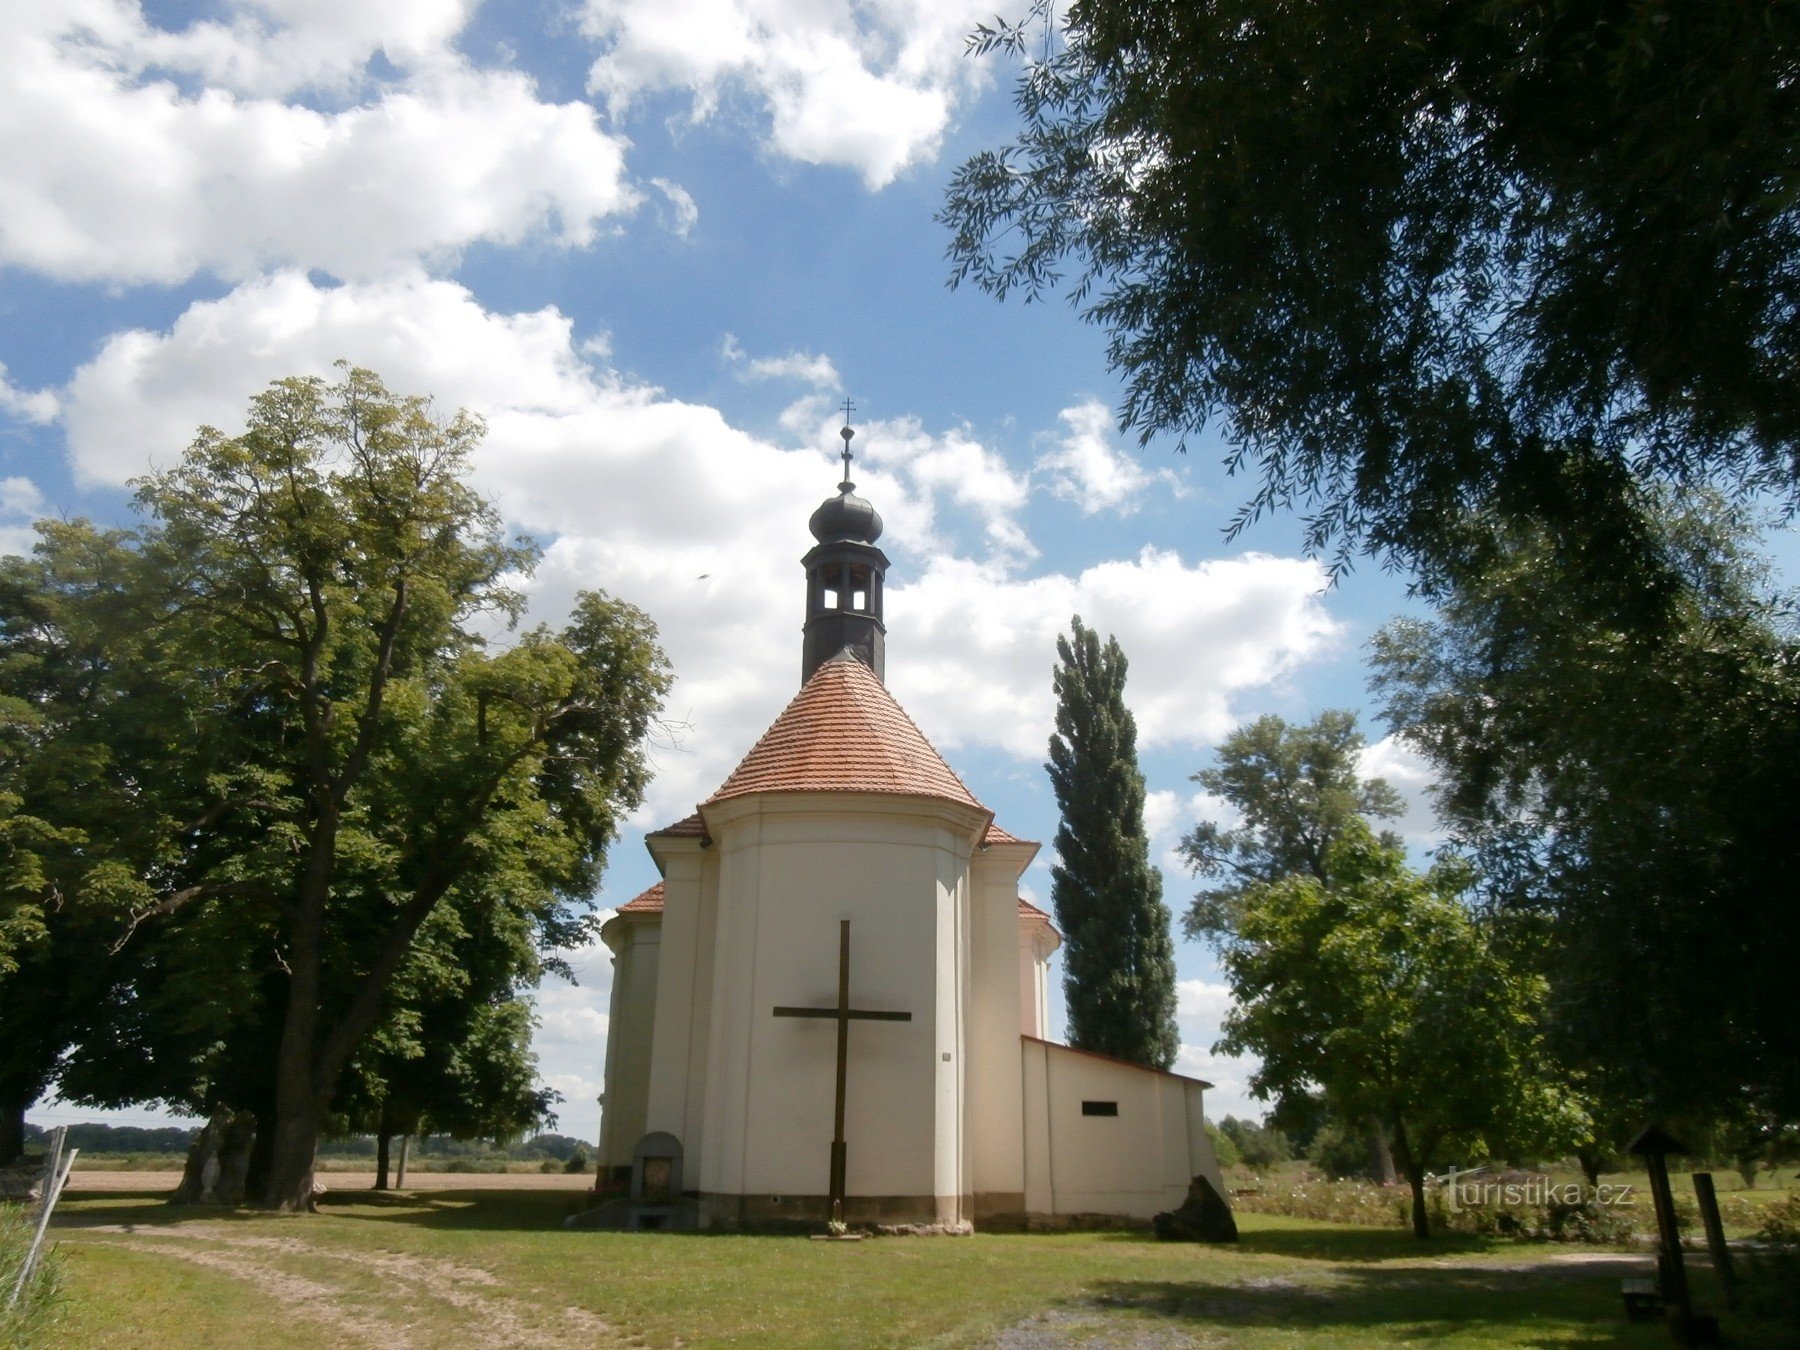 Ένα άλλο στολίδι στο Křešice - η προσκυνηματική εκκλησία της επίσκεψης της P. Mary